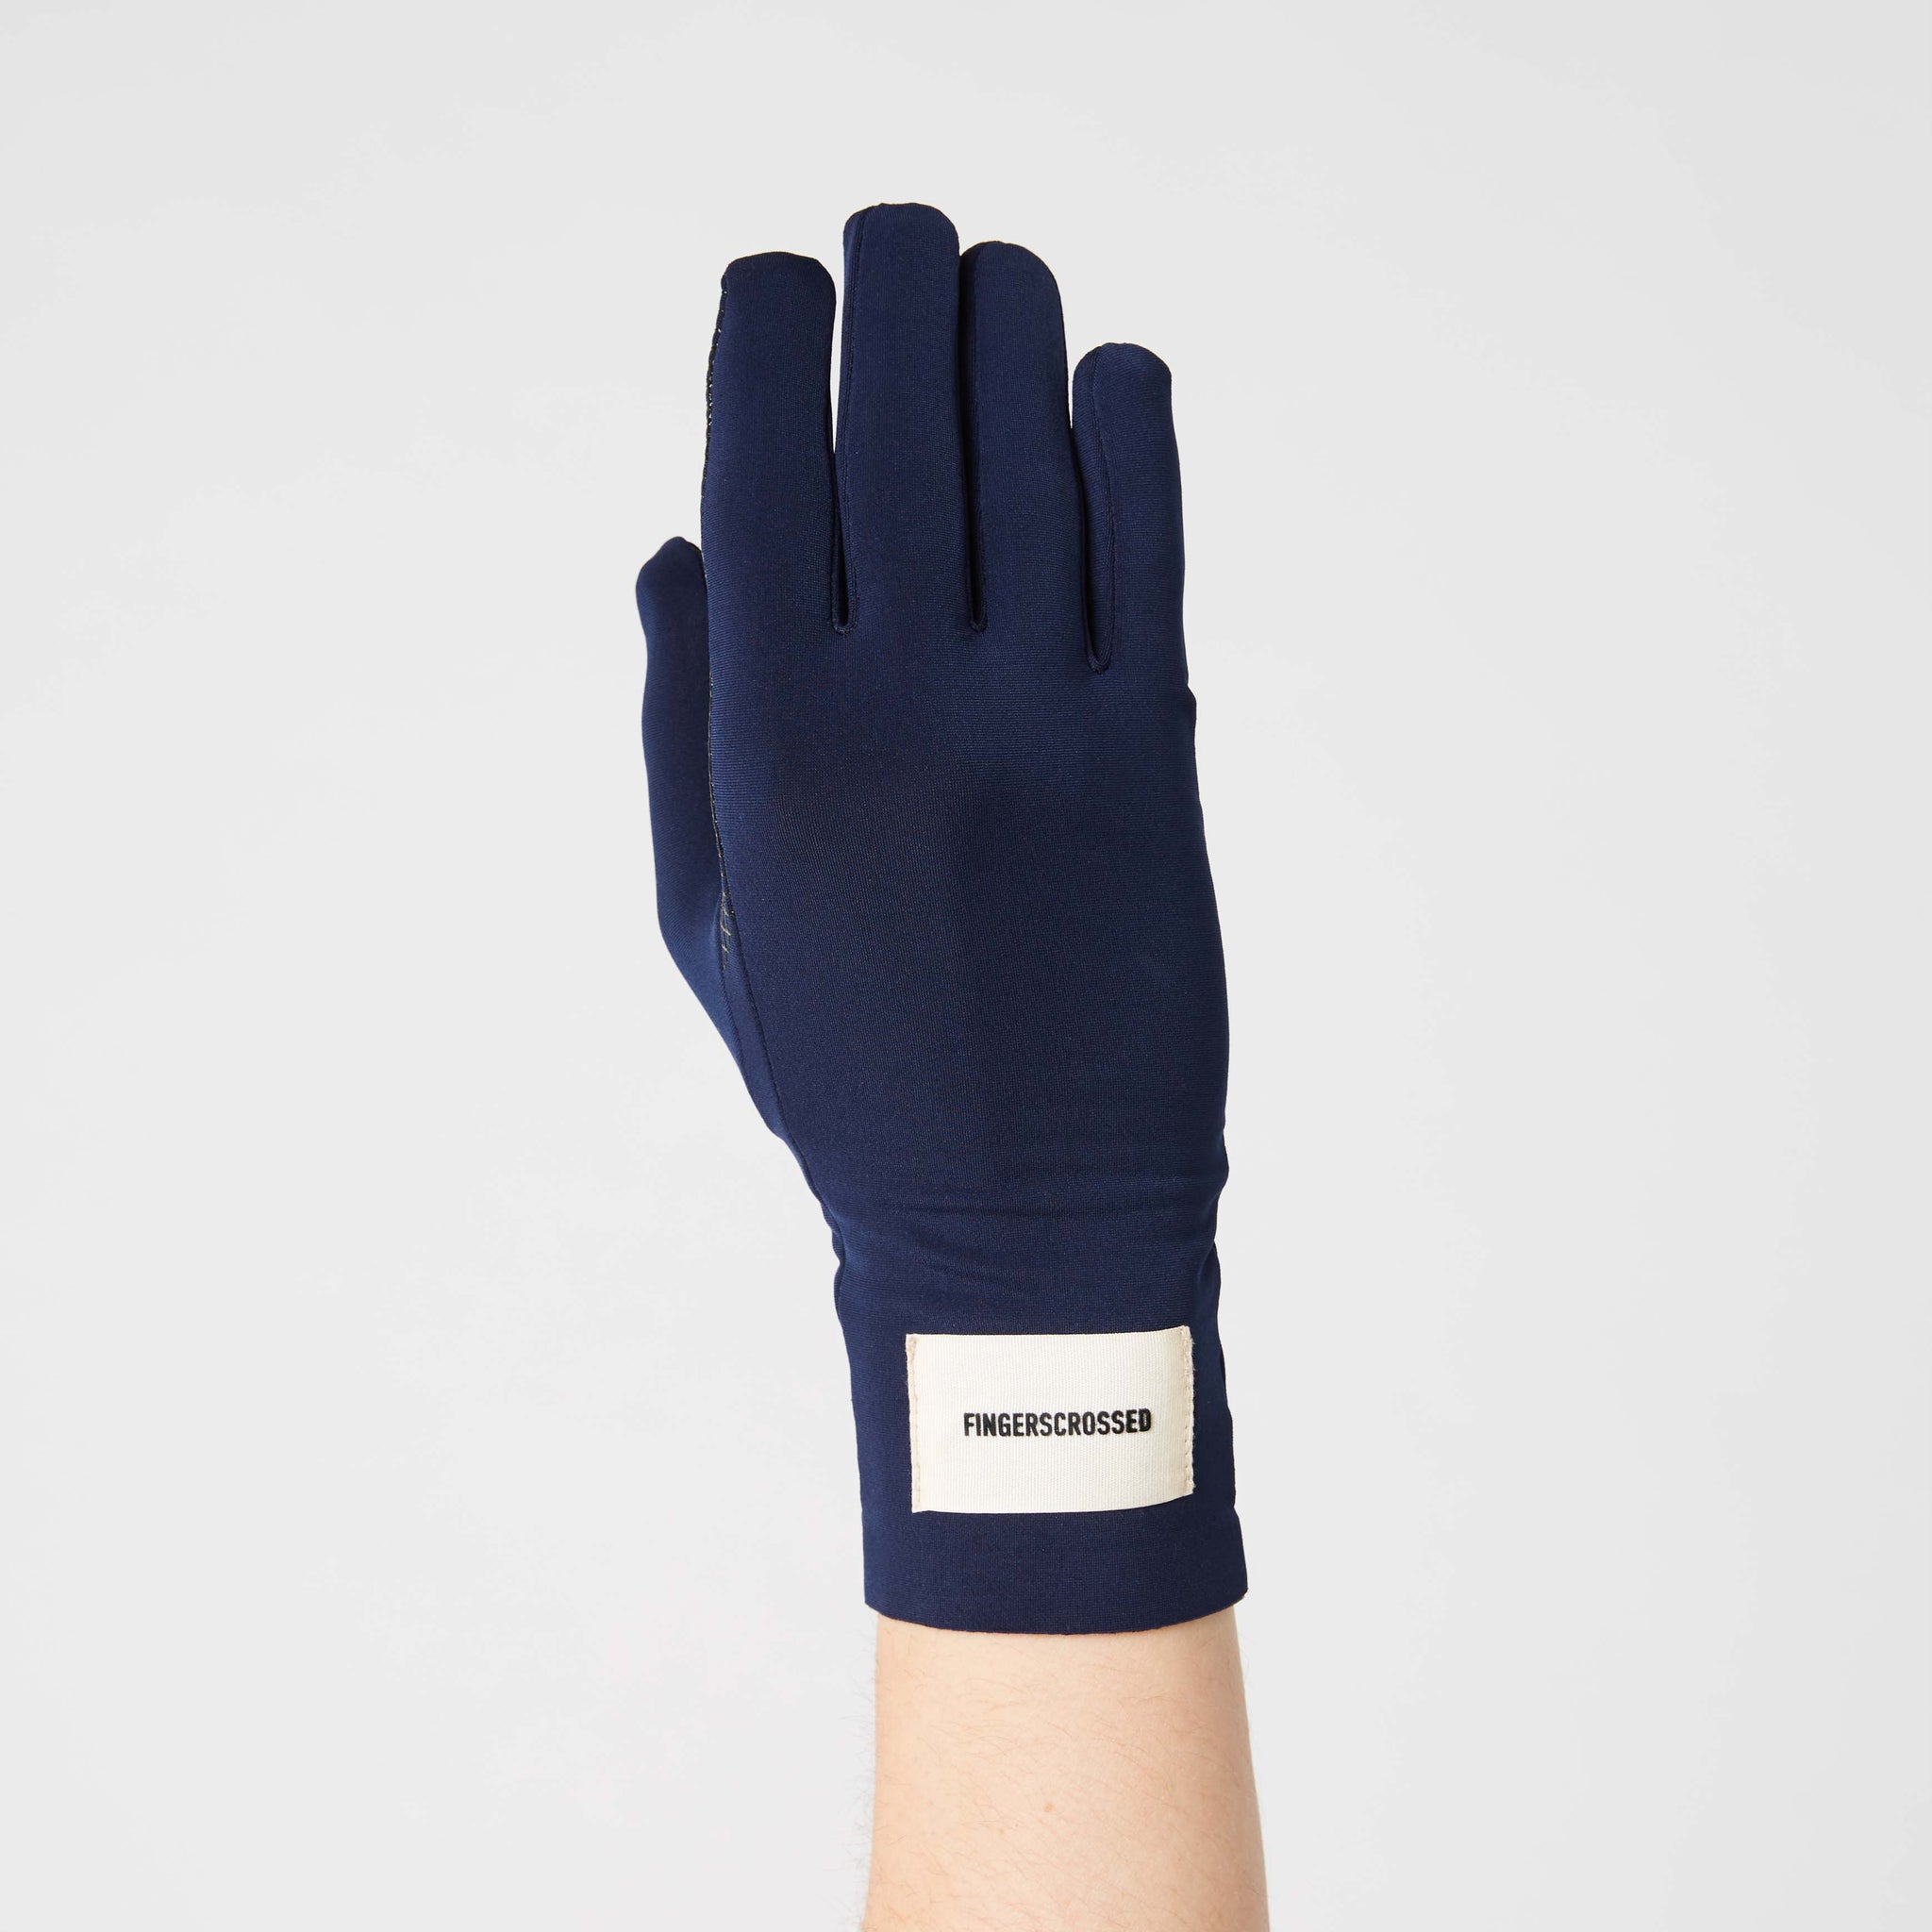 Mid Season Glove - Navy